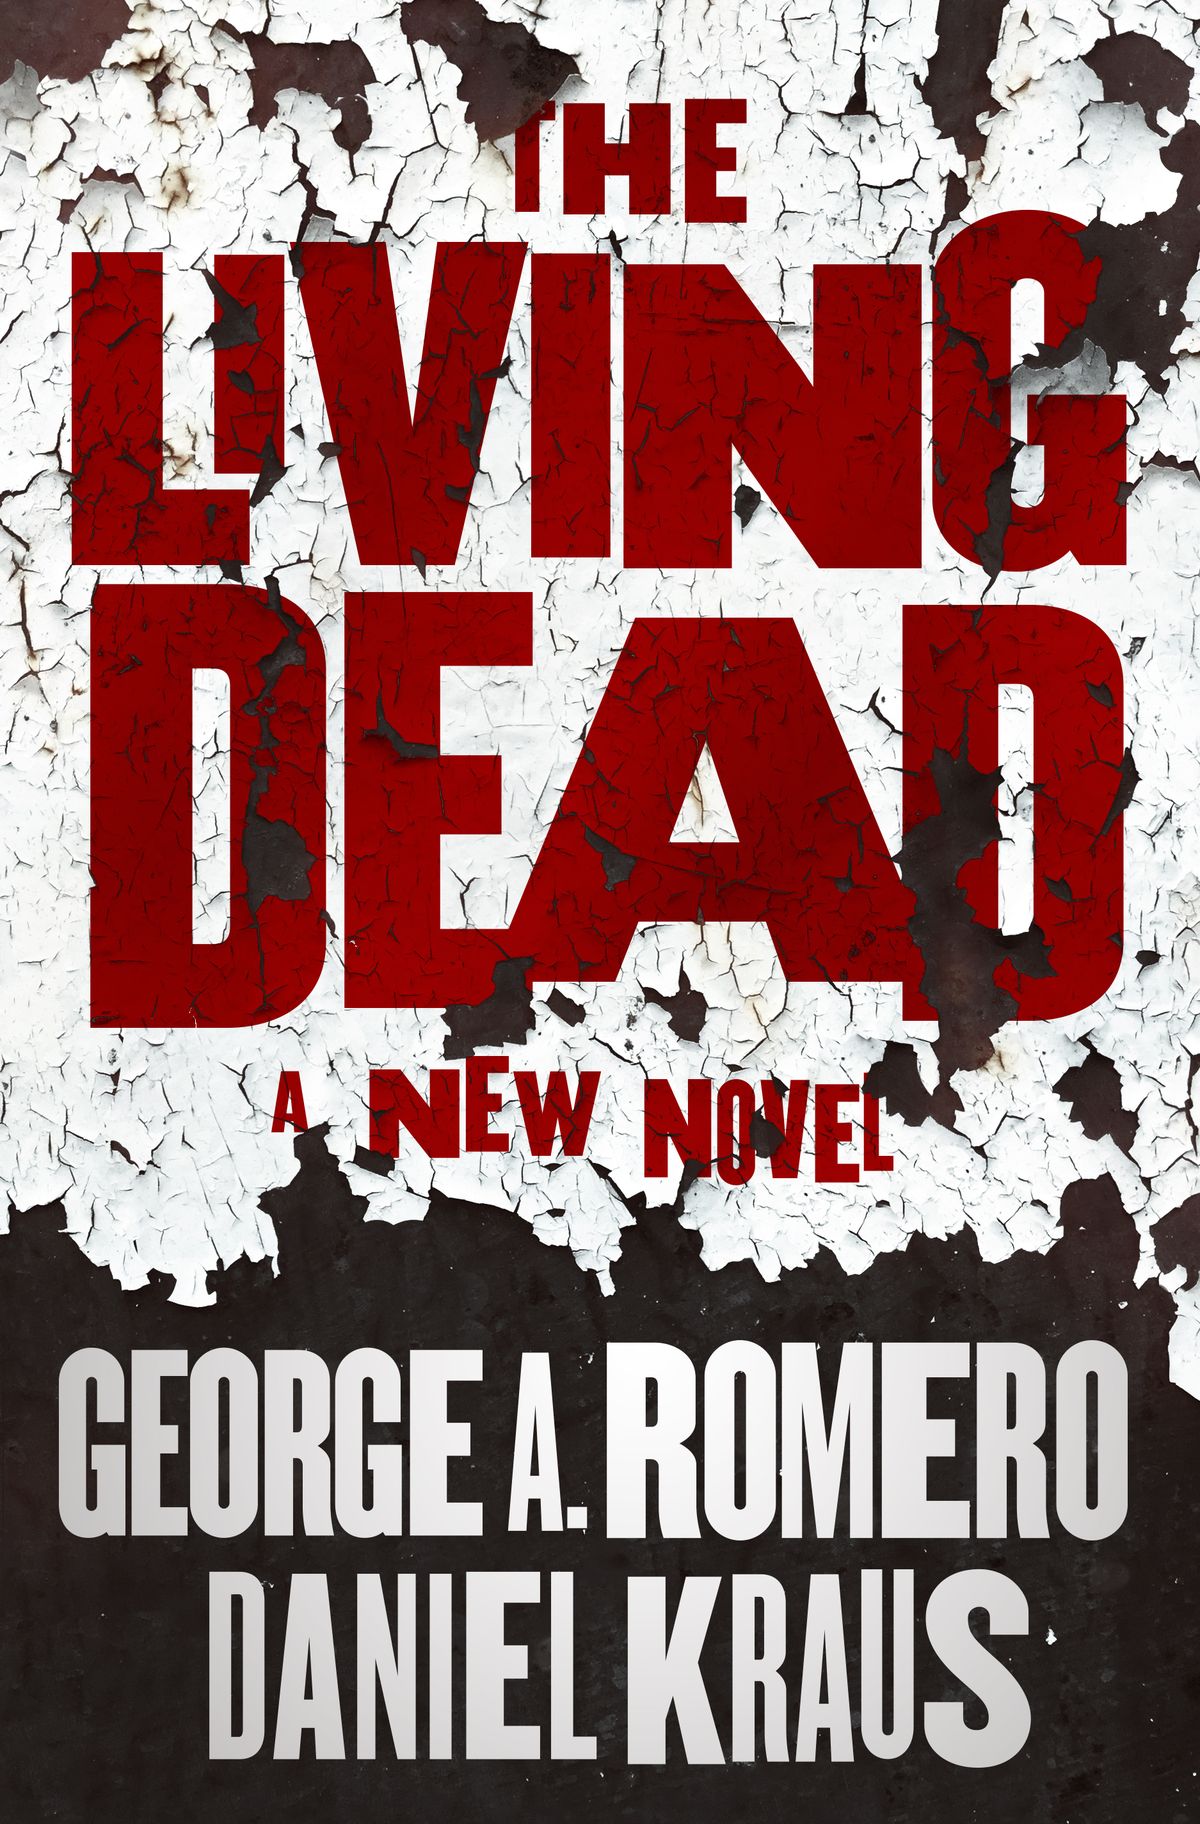 Immagine di copertina per il romanzo di George A. Romero e Daniel Kraus The Living Dead